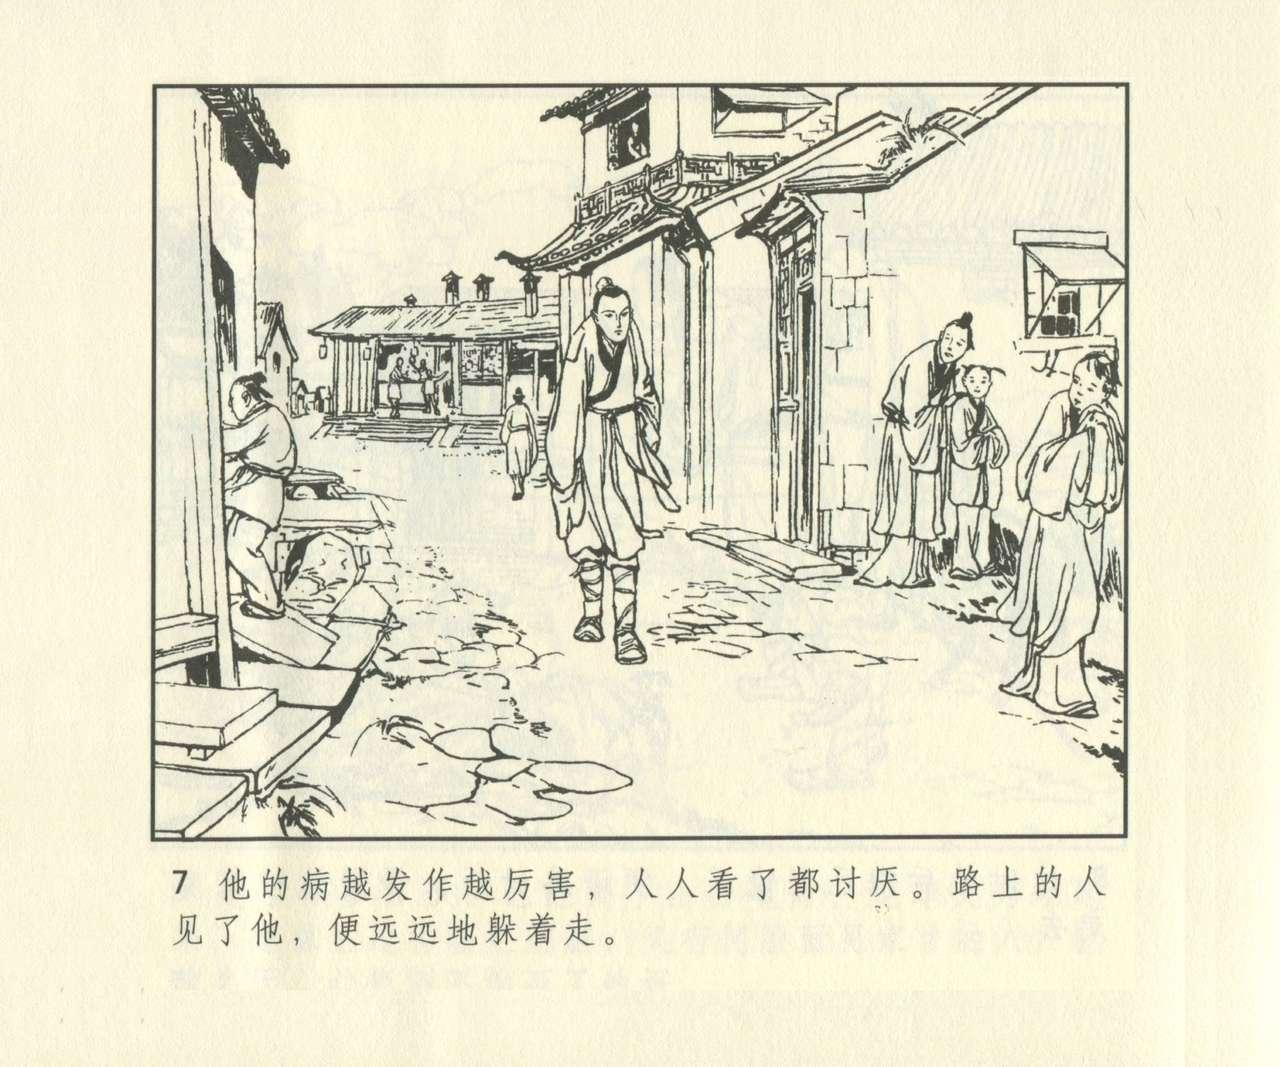 聊斋志异 张玮等绘 天津人民美术出版社 卷二十一 ~ 三十 623